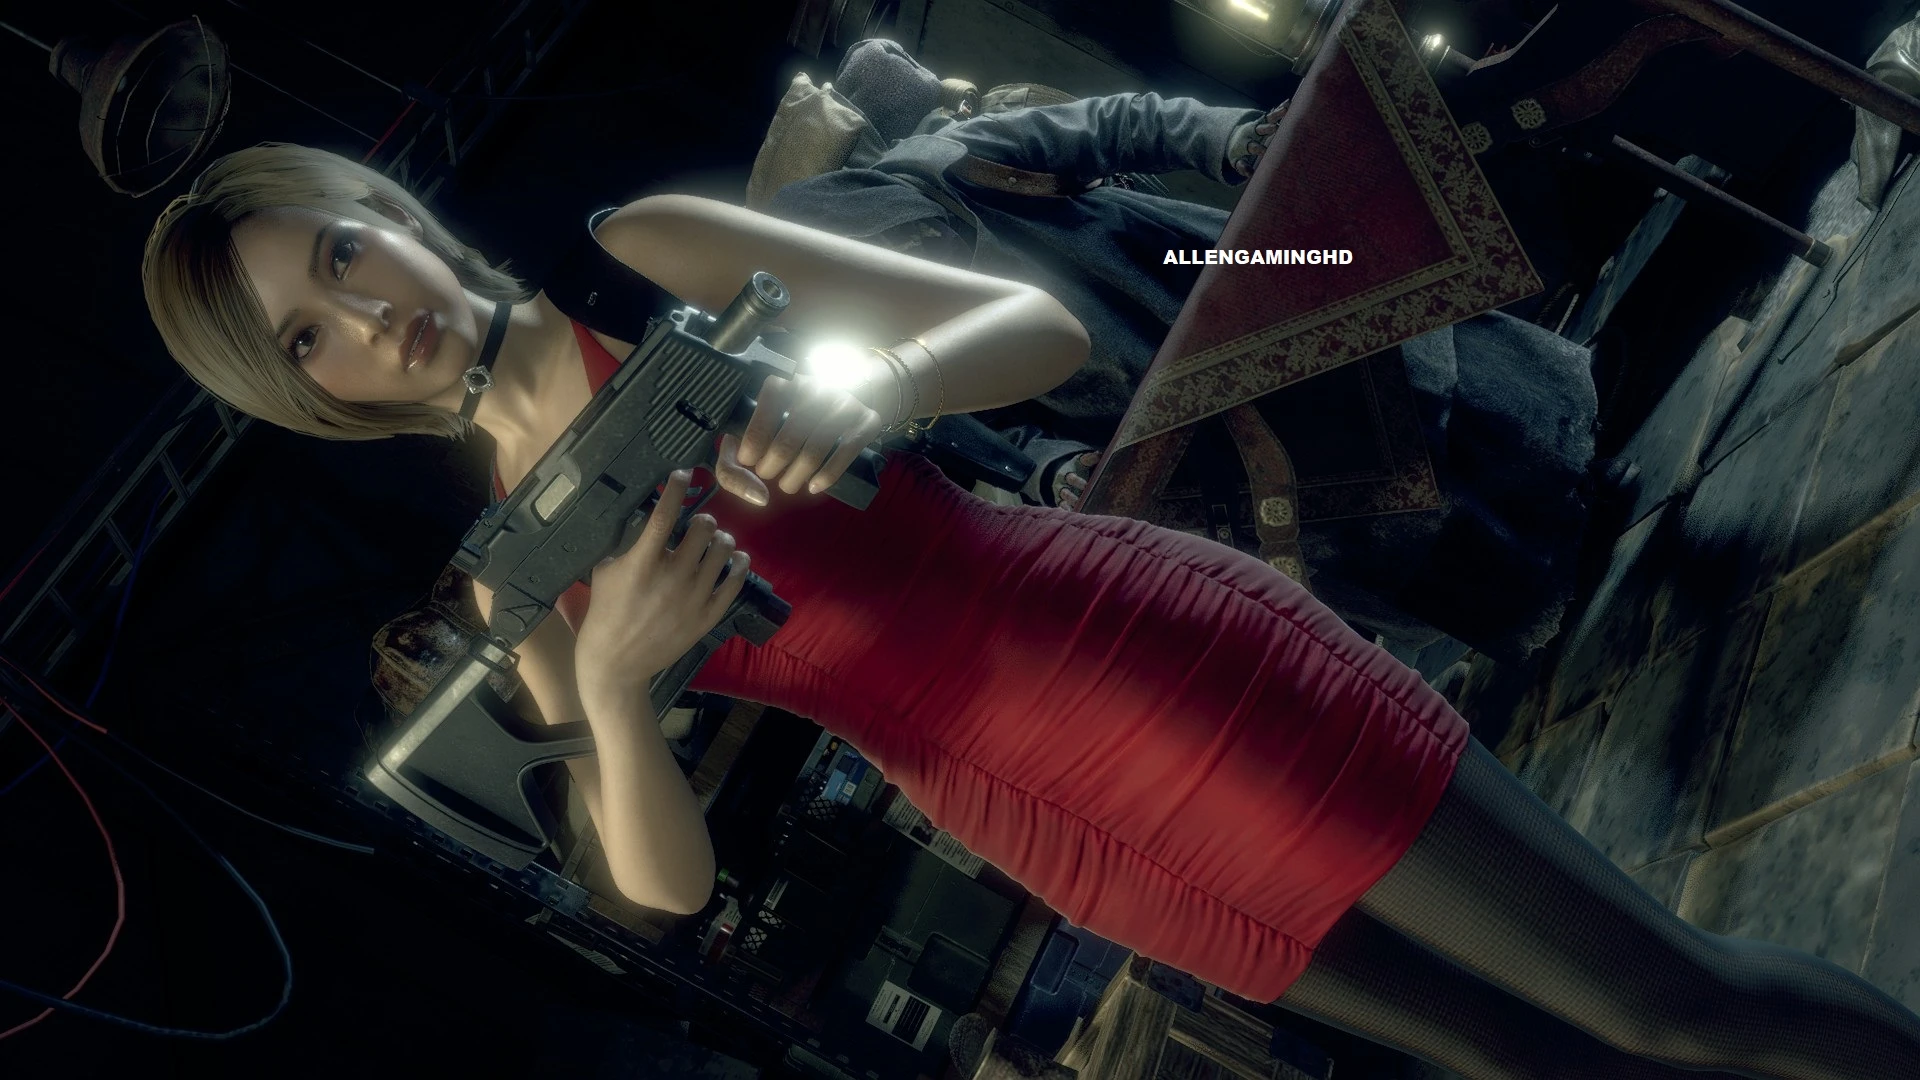 HD wallpaper: ada wong, Resident Evil, Resident Evil 4, Girl With